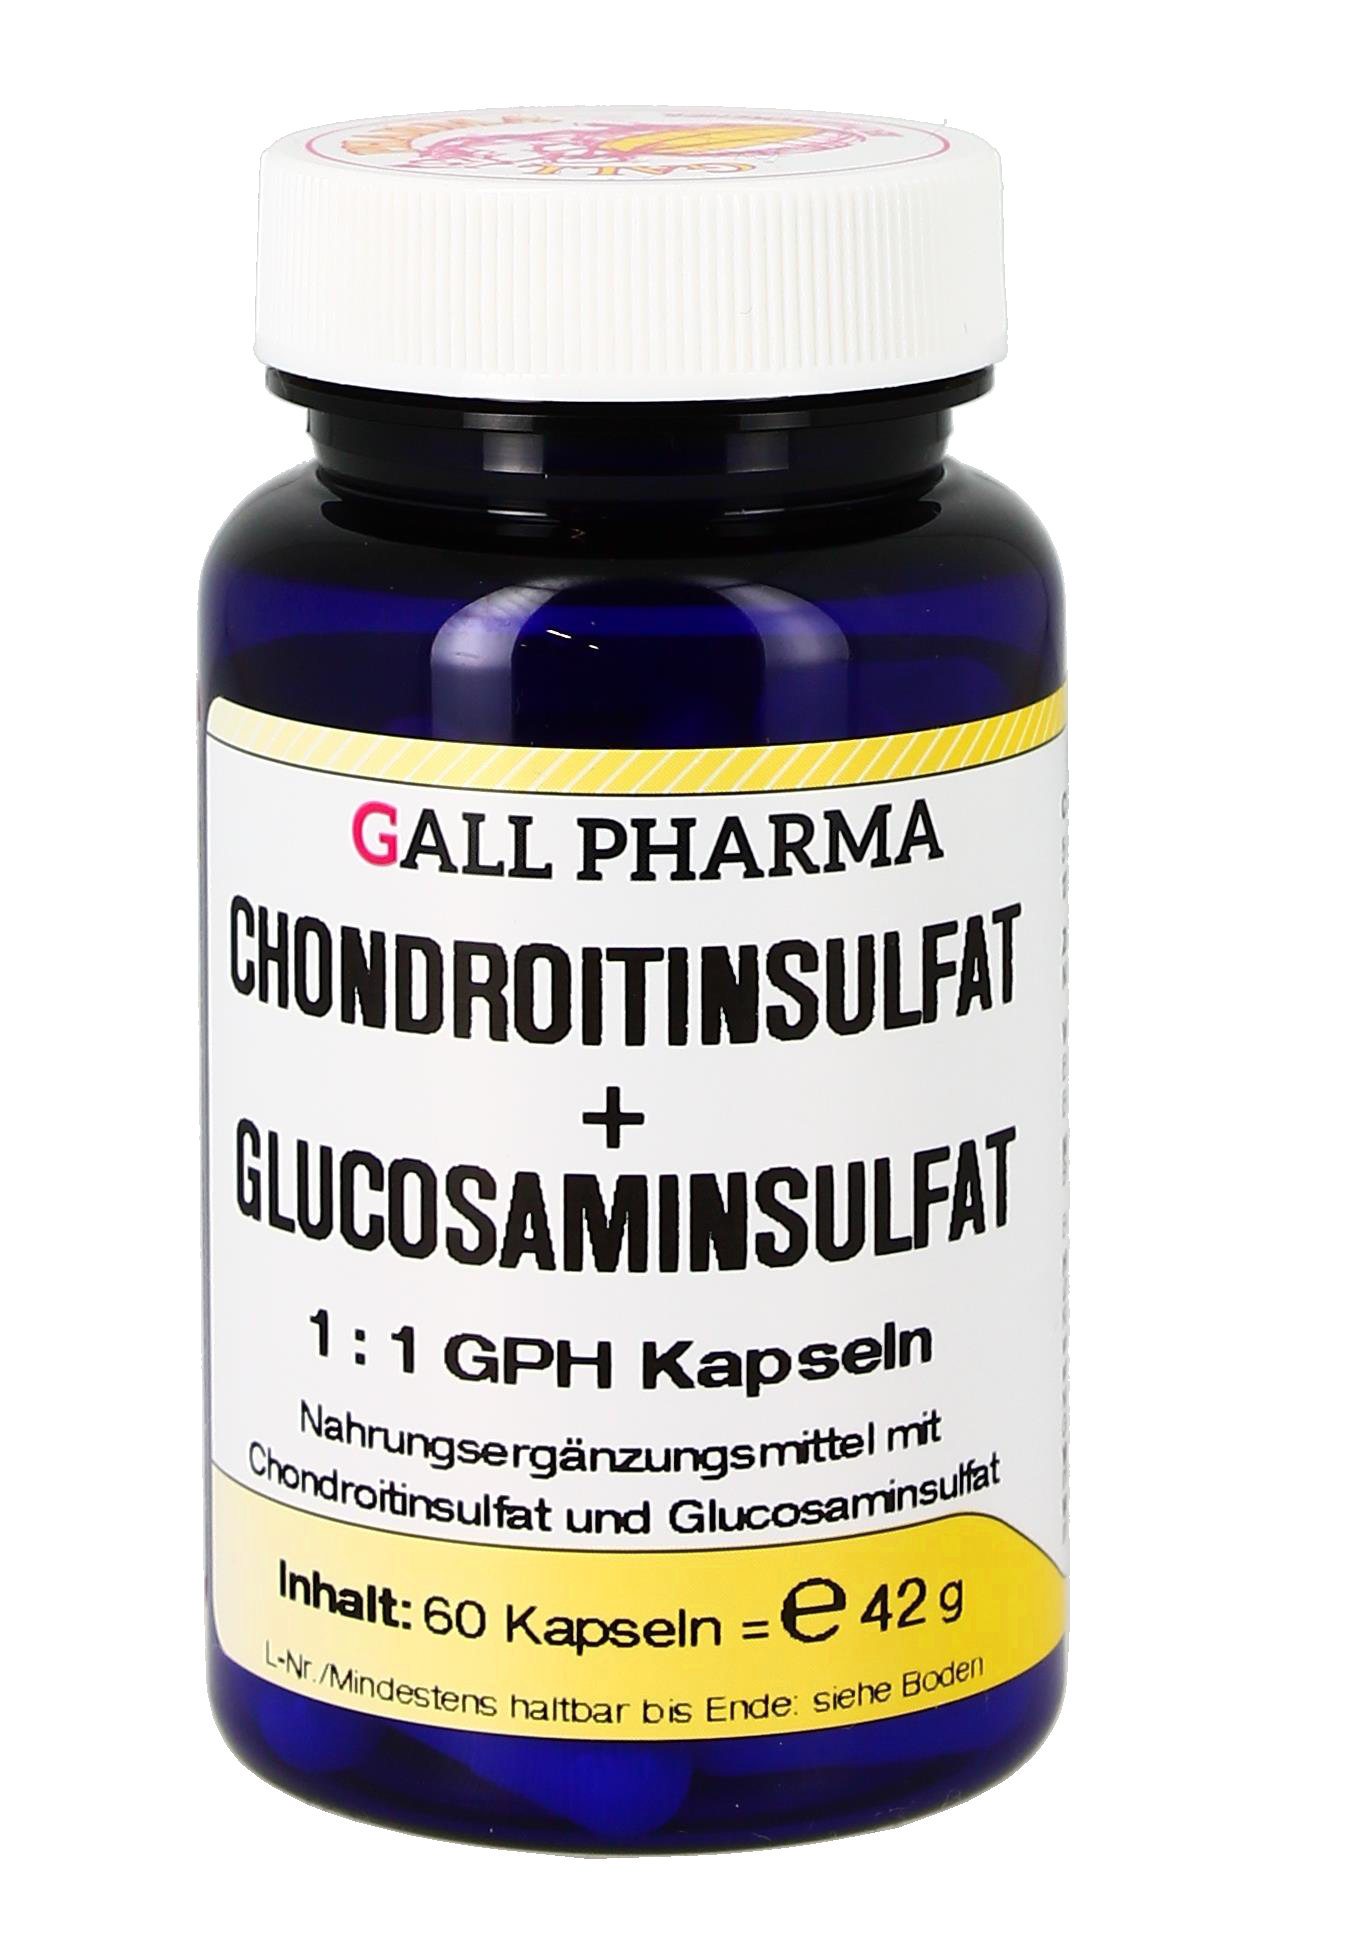 Chondroitinsulfat + Glucosaminsulfat 1:1 GPH Kapseln